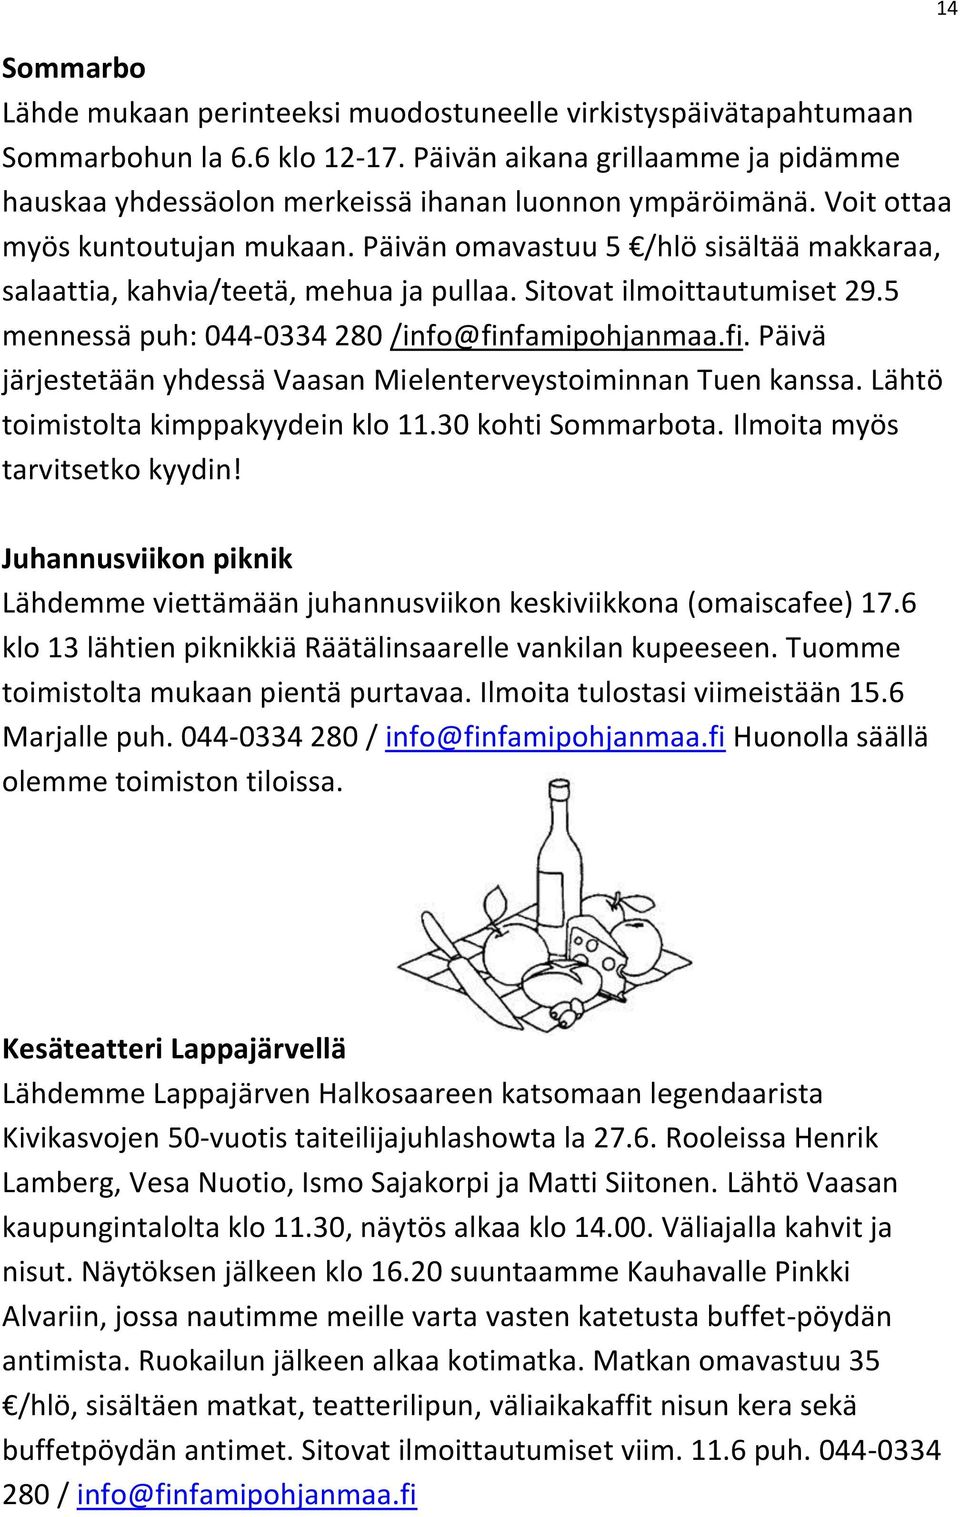 5 mennessä puh: 044-0334 280 /info@finfamipohjanmaa.fi. Päivä järjestetään yhdessä Vaasan Mielenterveystoiminnan Tuen kanssa. Lähtö toimistolta kimppakyydein klo 11.30 kohti Sommarbota.